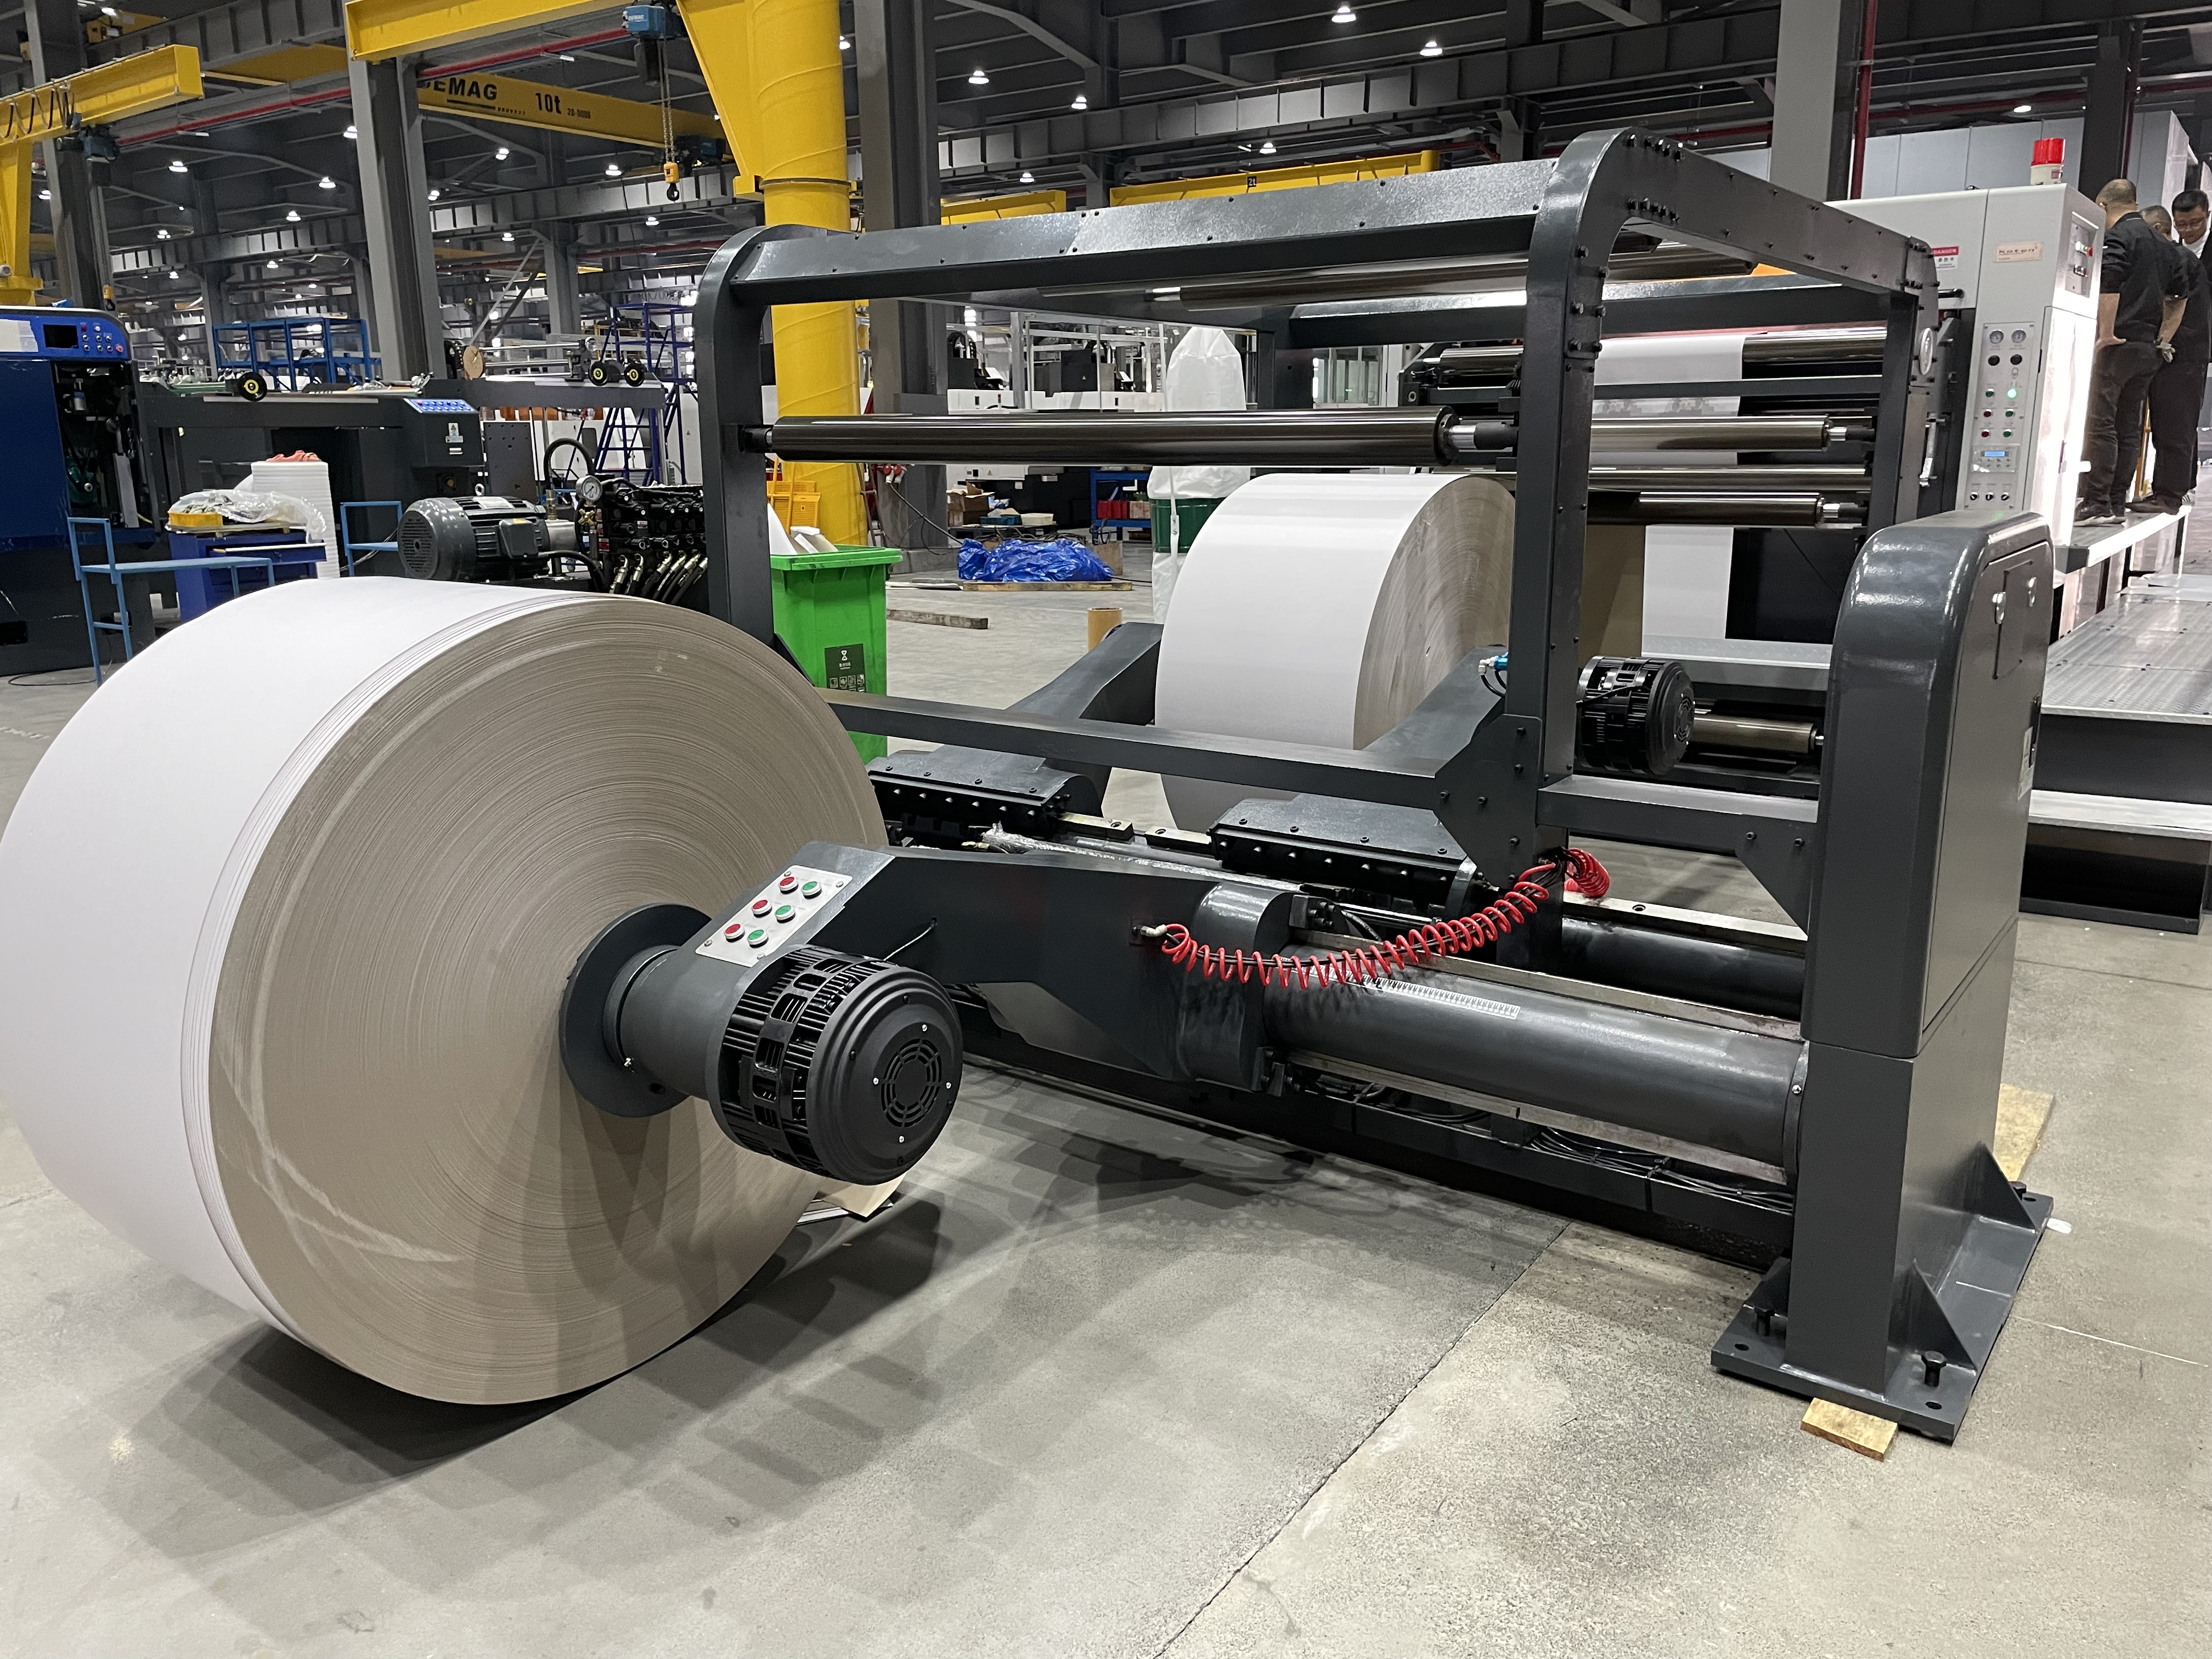 Modèle de machine à feuille de papier rotatif à grande vitesse GDQ-1400/1700